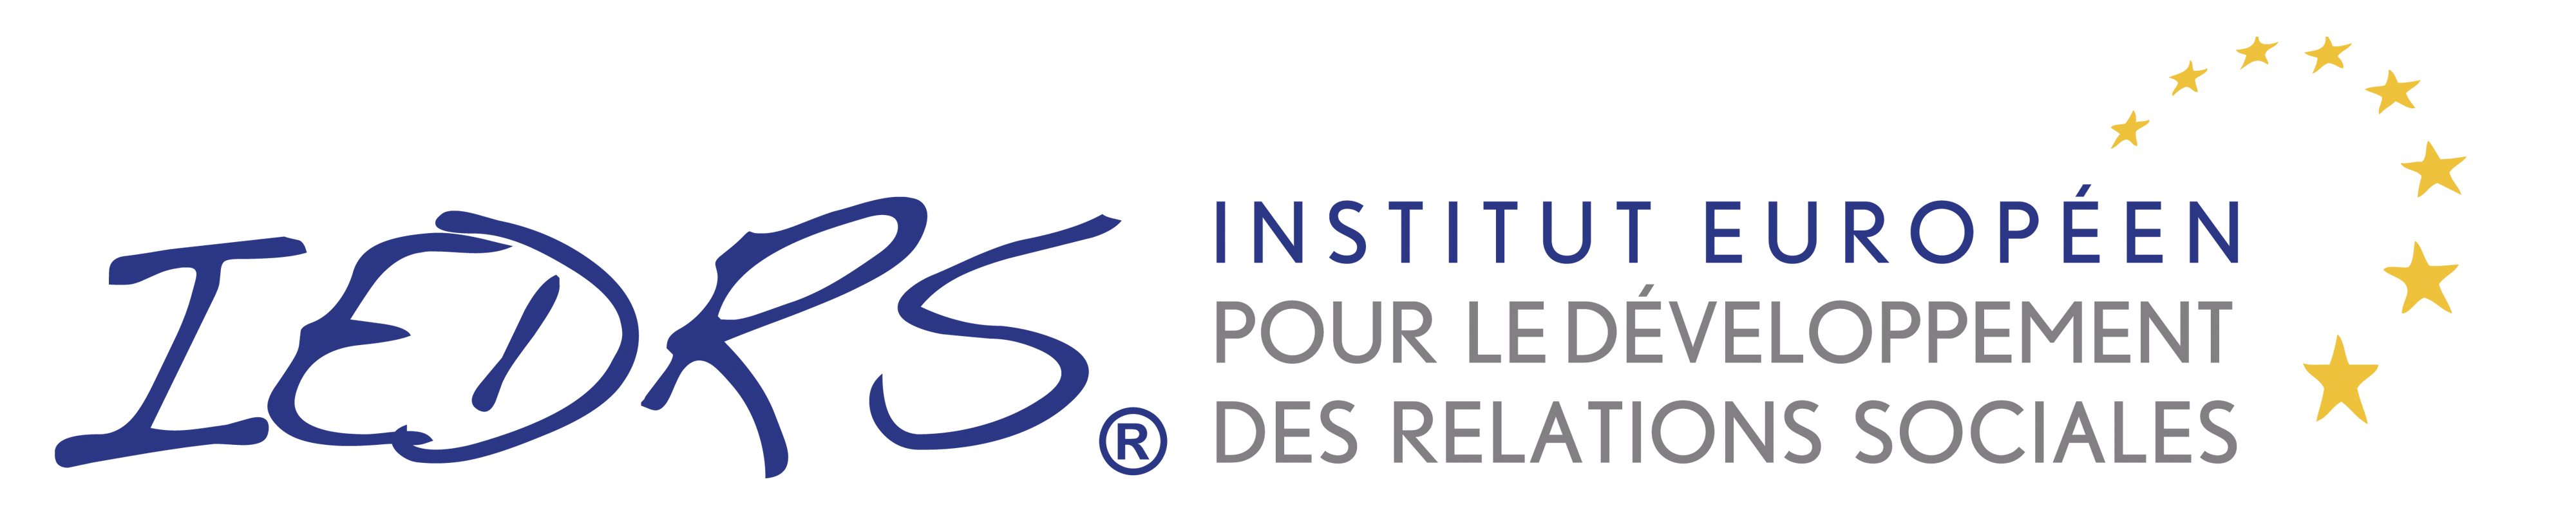 Logo de l'IEDRS, Institut Européen pour le Développement des Relations Sociales